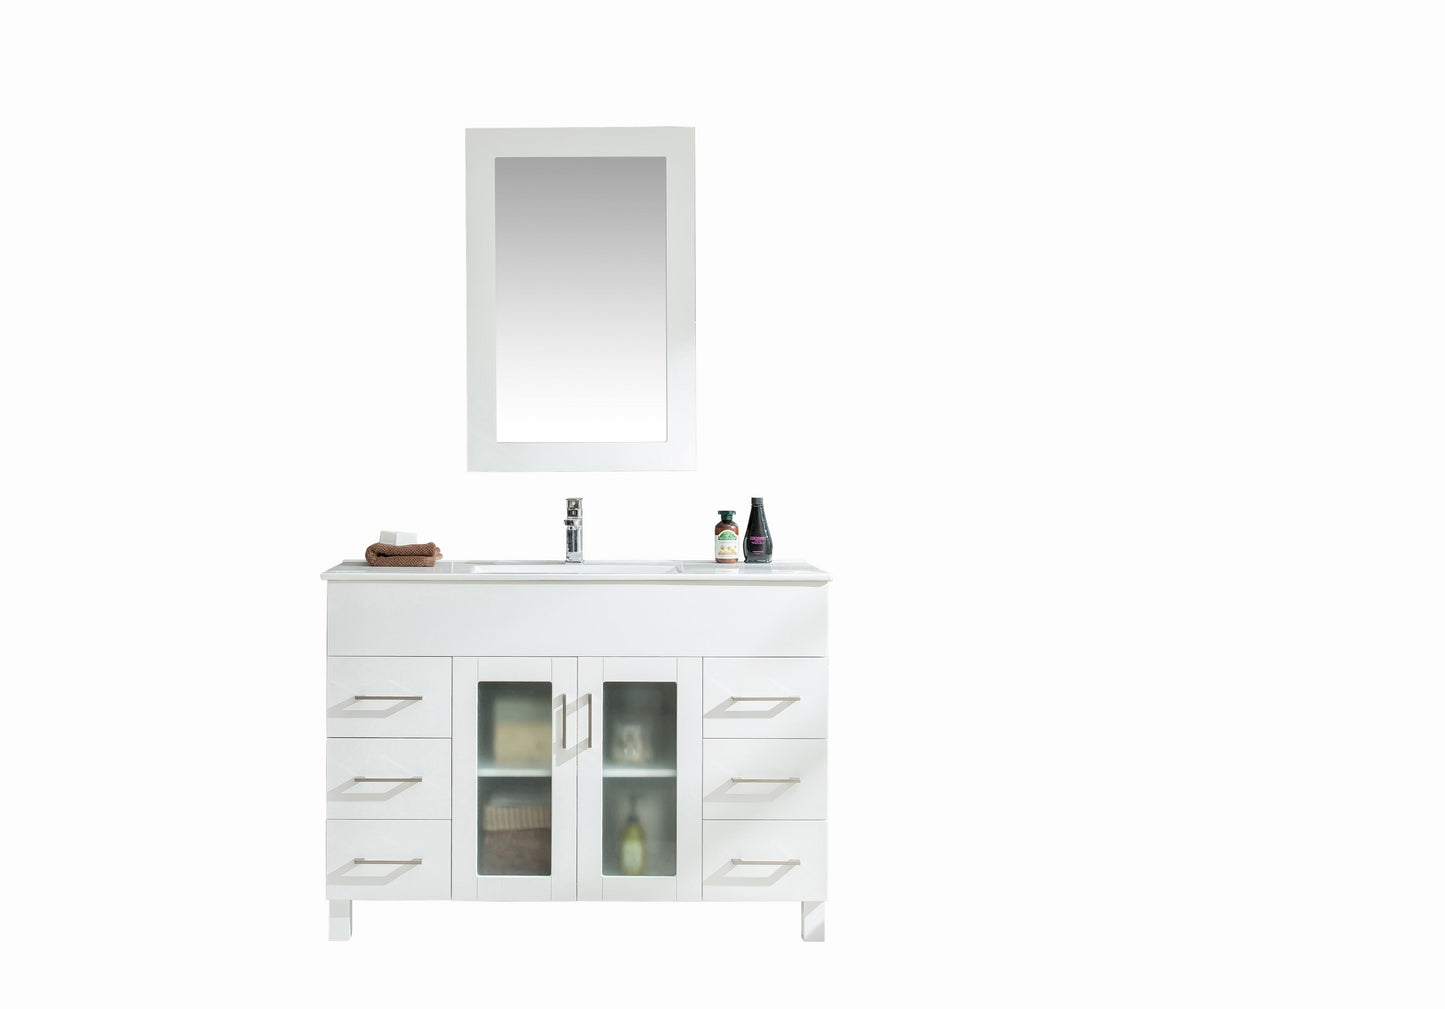 Nova 48 - Cabinet with Counter - Luxe Bathroom Vanities Luxury Bathroom Fixtures Bathroom Furniture